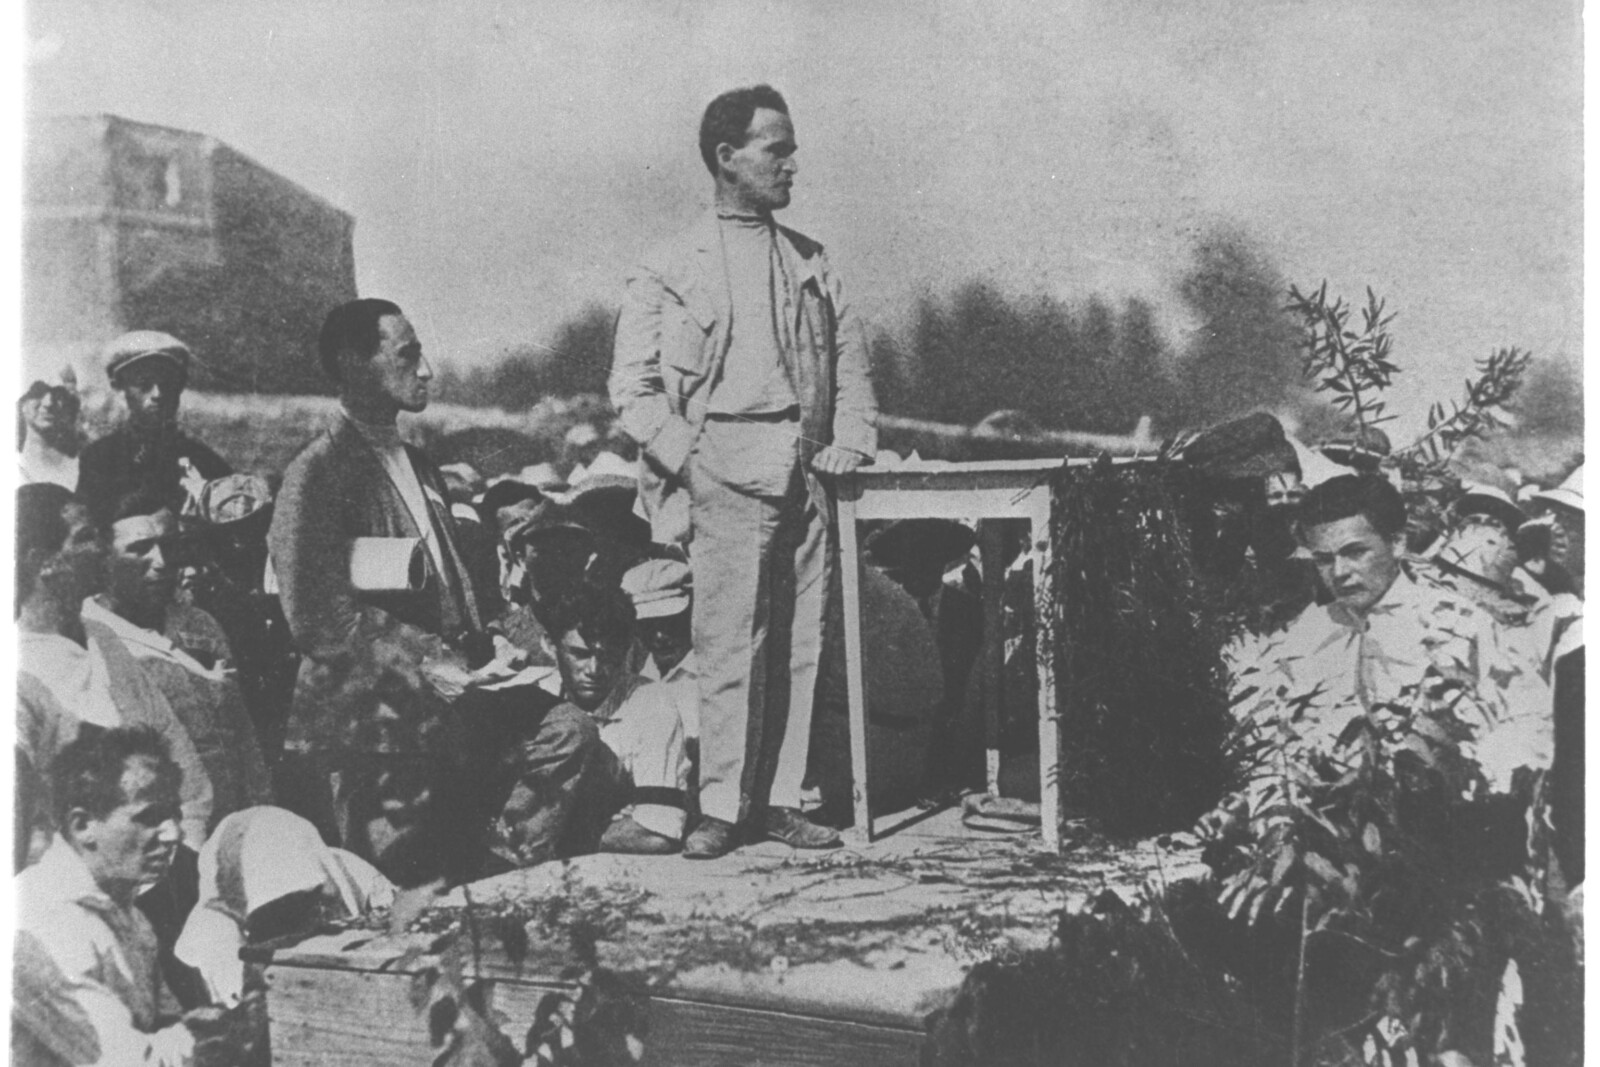 داڤيد بن غوريون، سكرتير الهستدروت في بدايتها، يلقي خطابا بمناسبة وضع حجر الأساس لمبنى الهستدروت في أورشليم، 1 سبتمبر 1924. صورة: مجموعة الصور الوطنية 